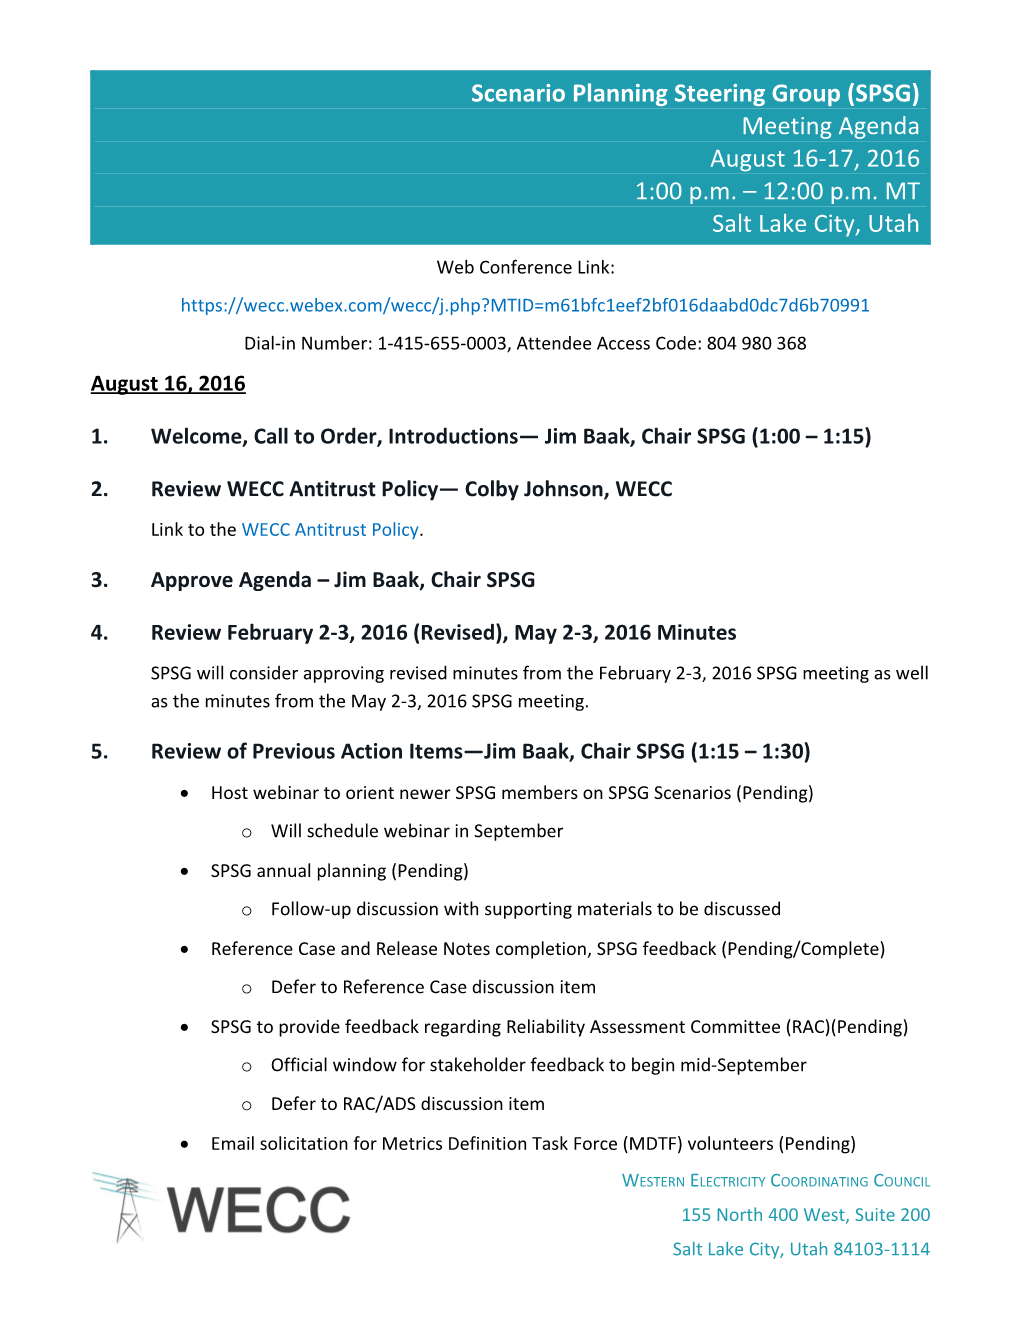 SPSG Meeting Agenda August 16-17, 20162